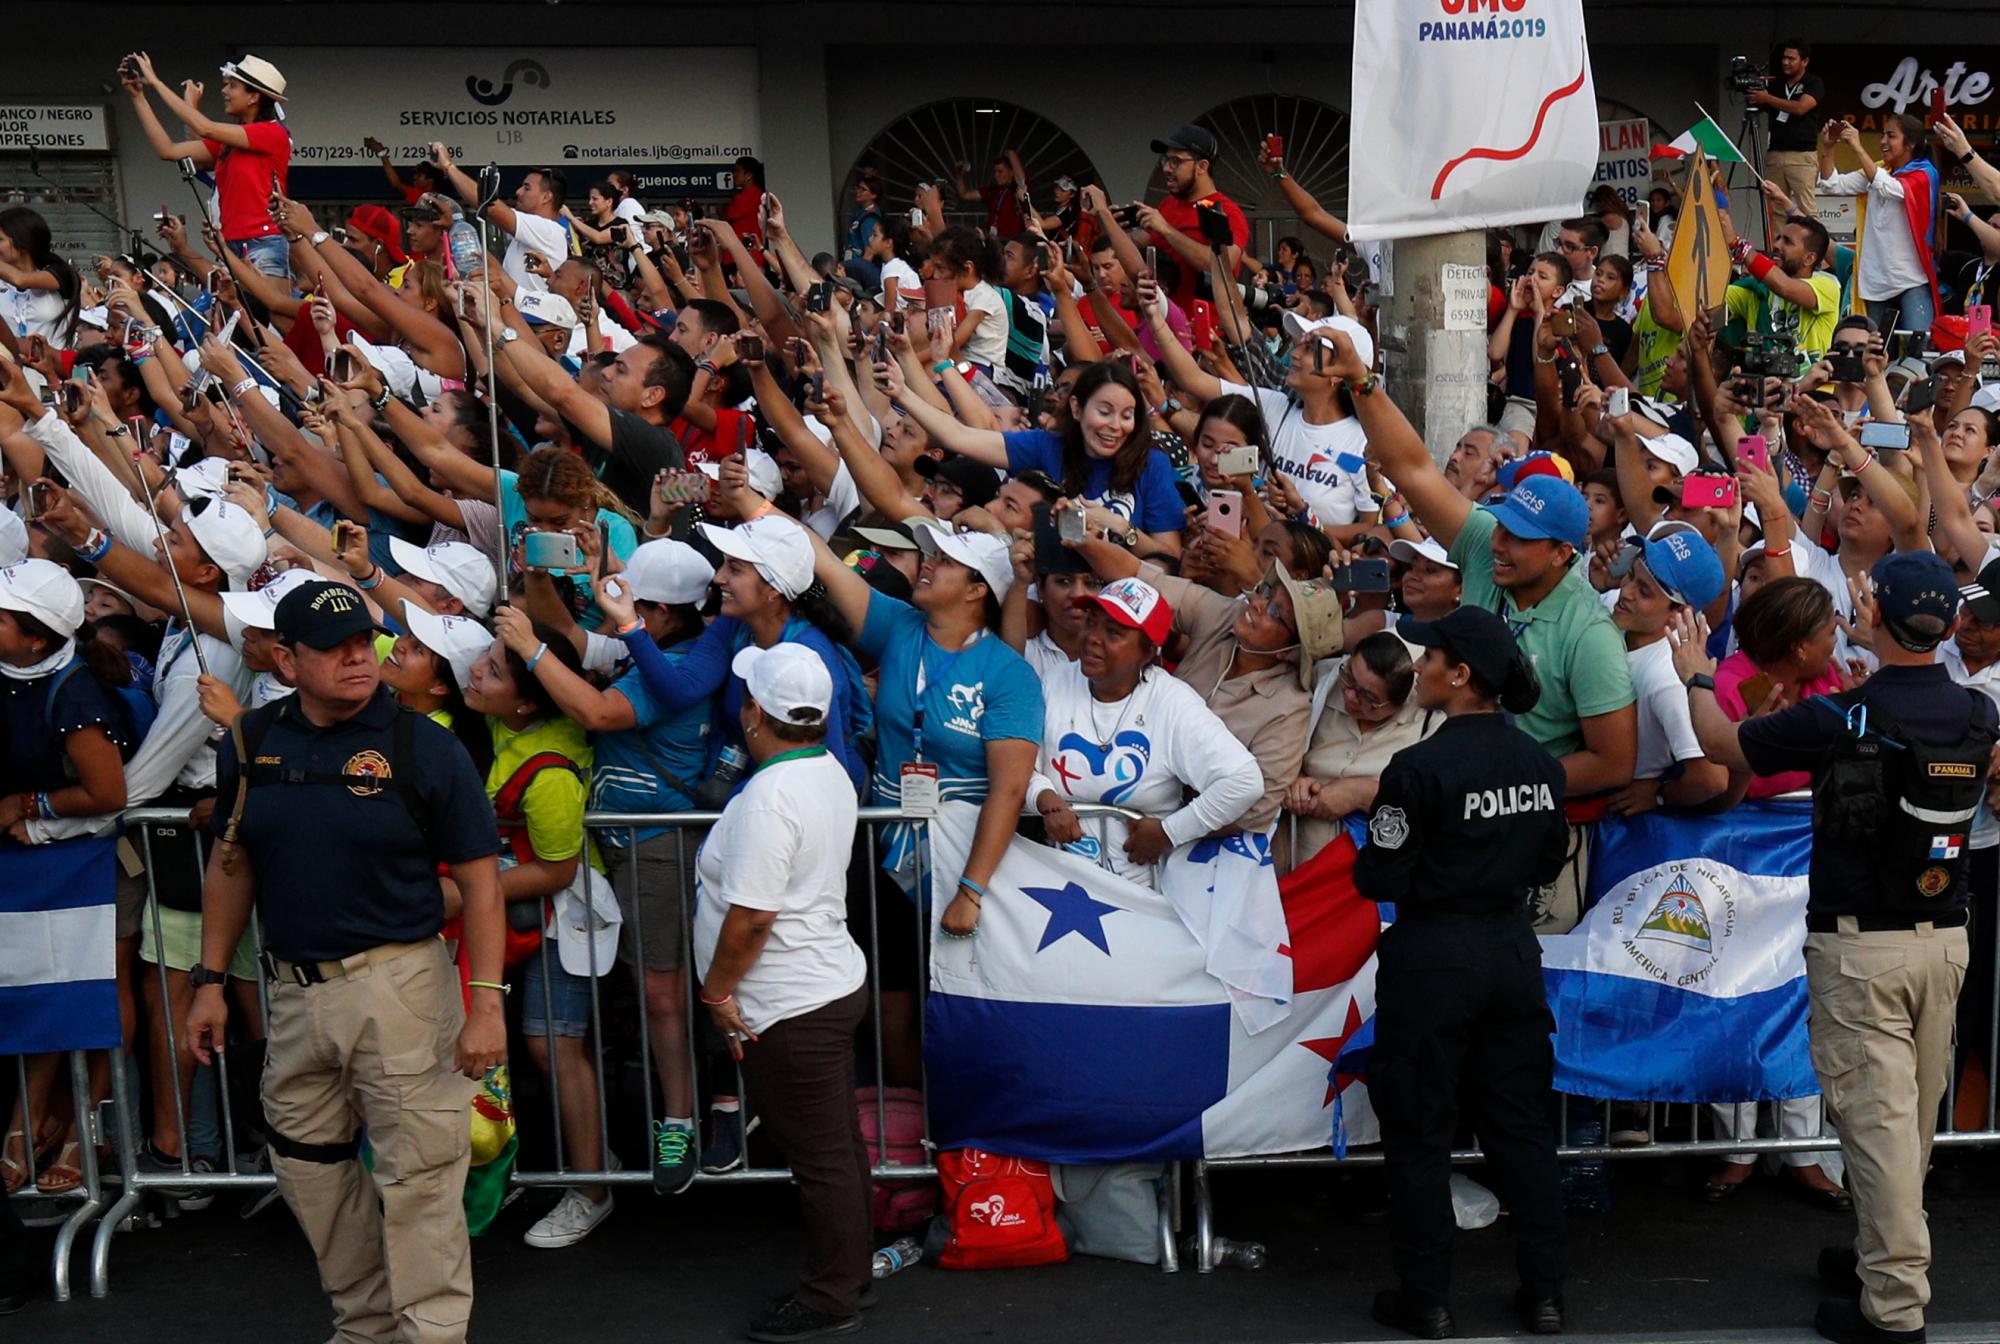 La gente a la espera del Papa Francisco en la ciudad de Panamá.